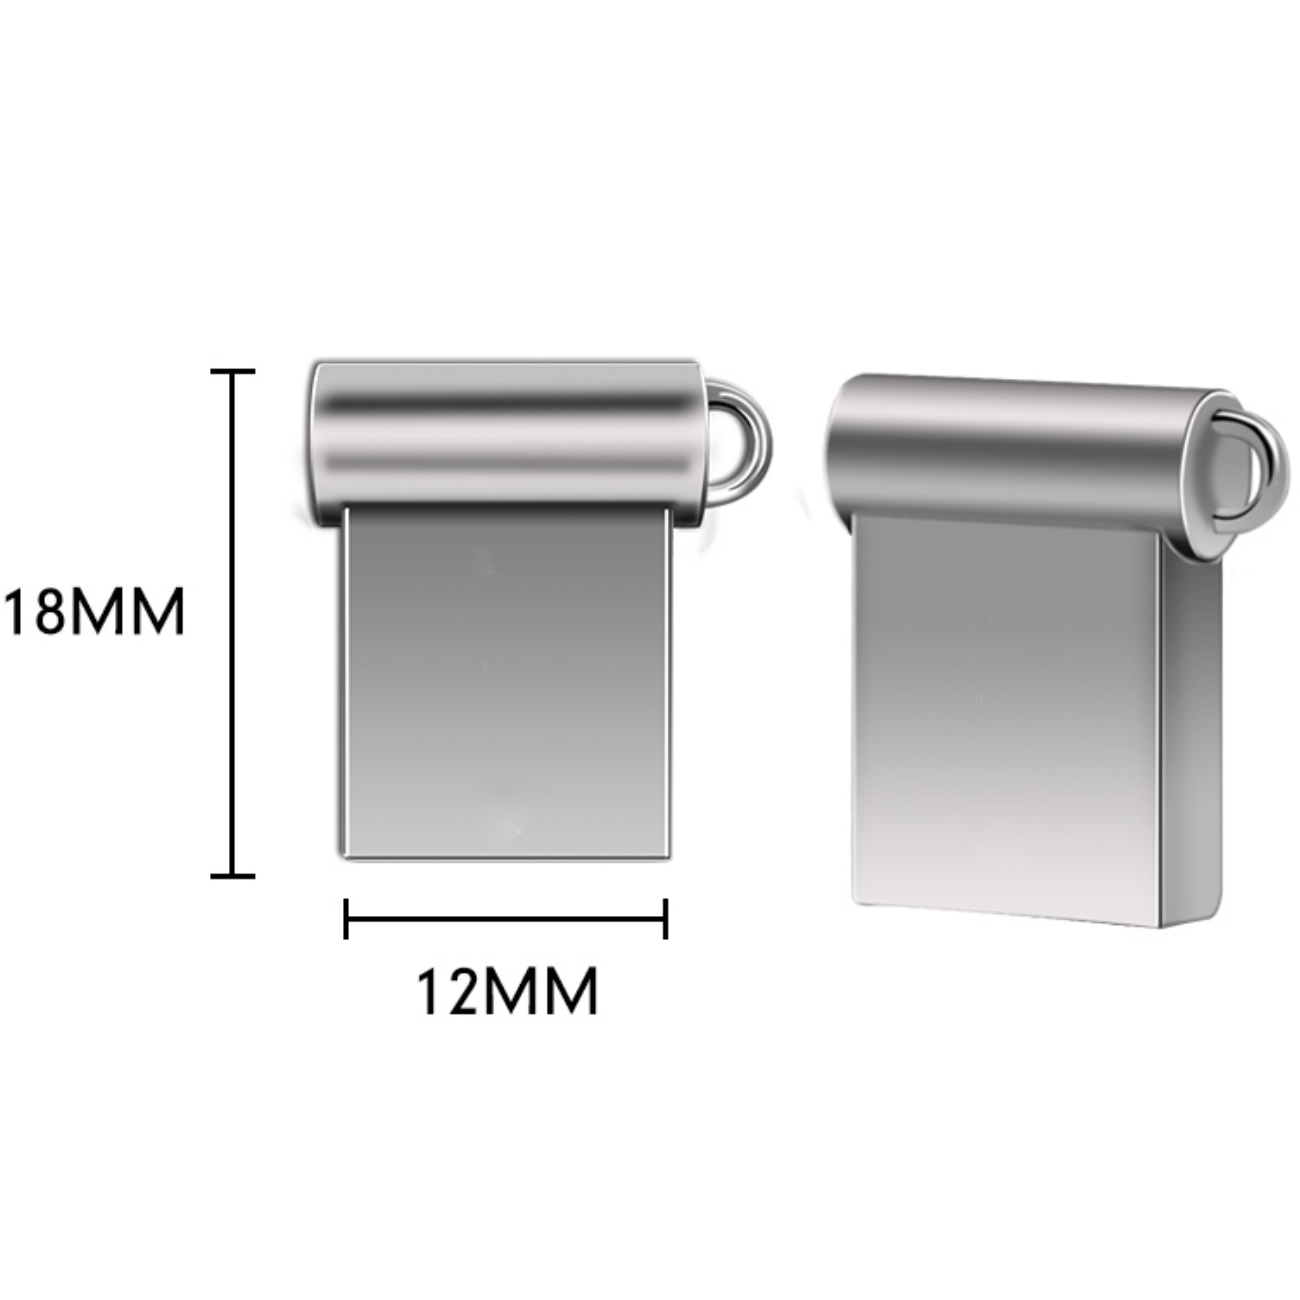 USB GERMANY ® Mini M5 2 USB-Stick (Silber, GB)